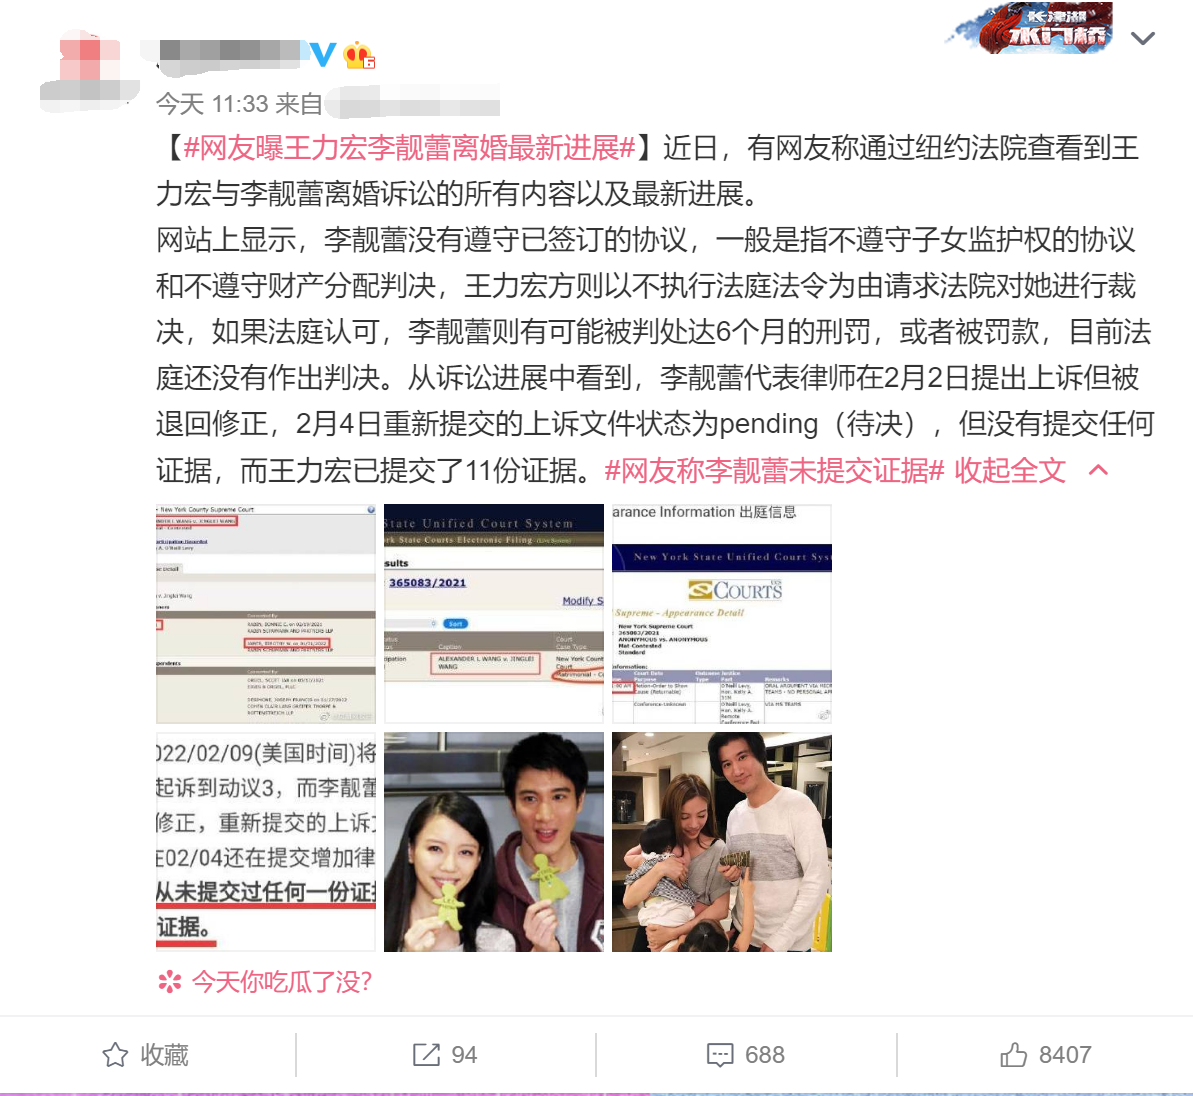 王力宏离婚法庭记录曝光:李靓蕾被疑将入狱？当事人火速发声明反击!